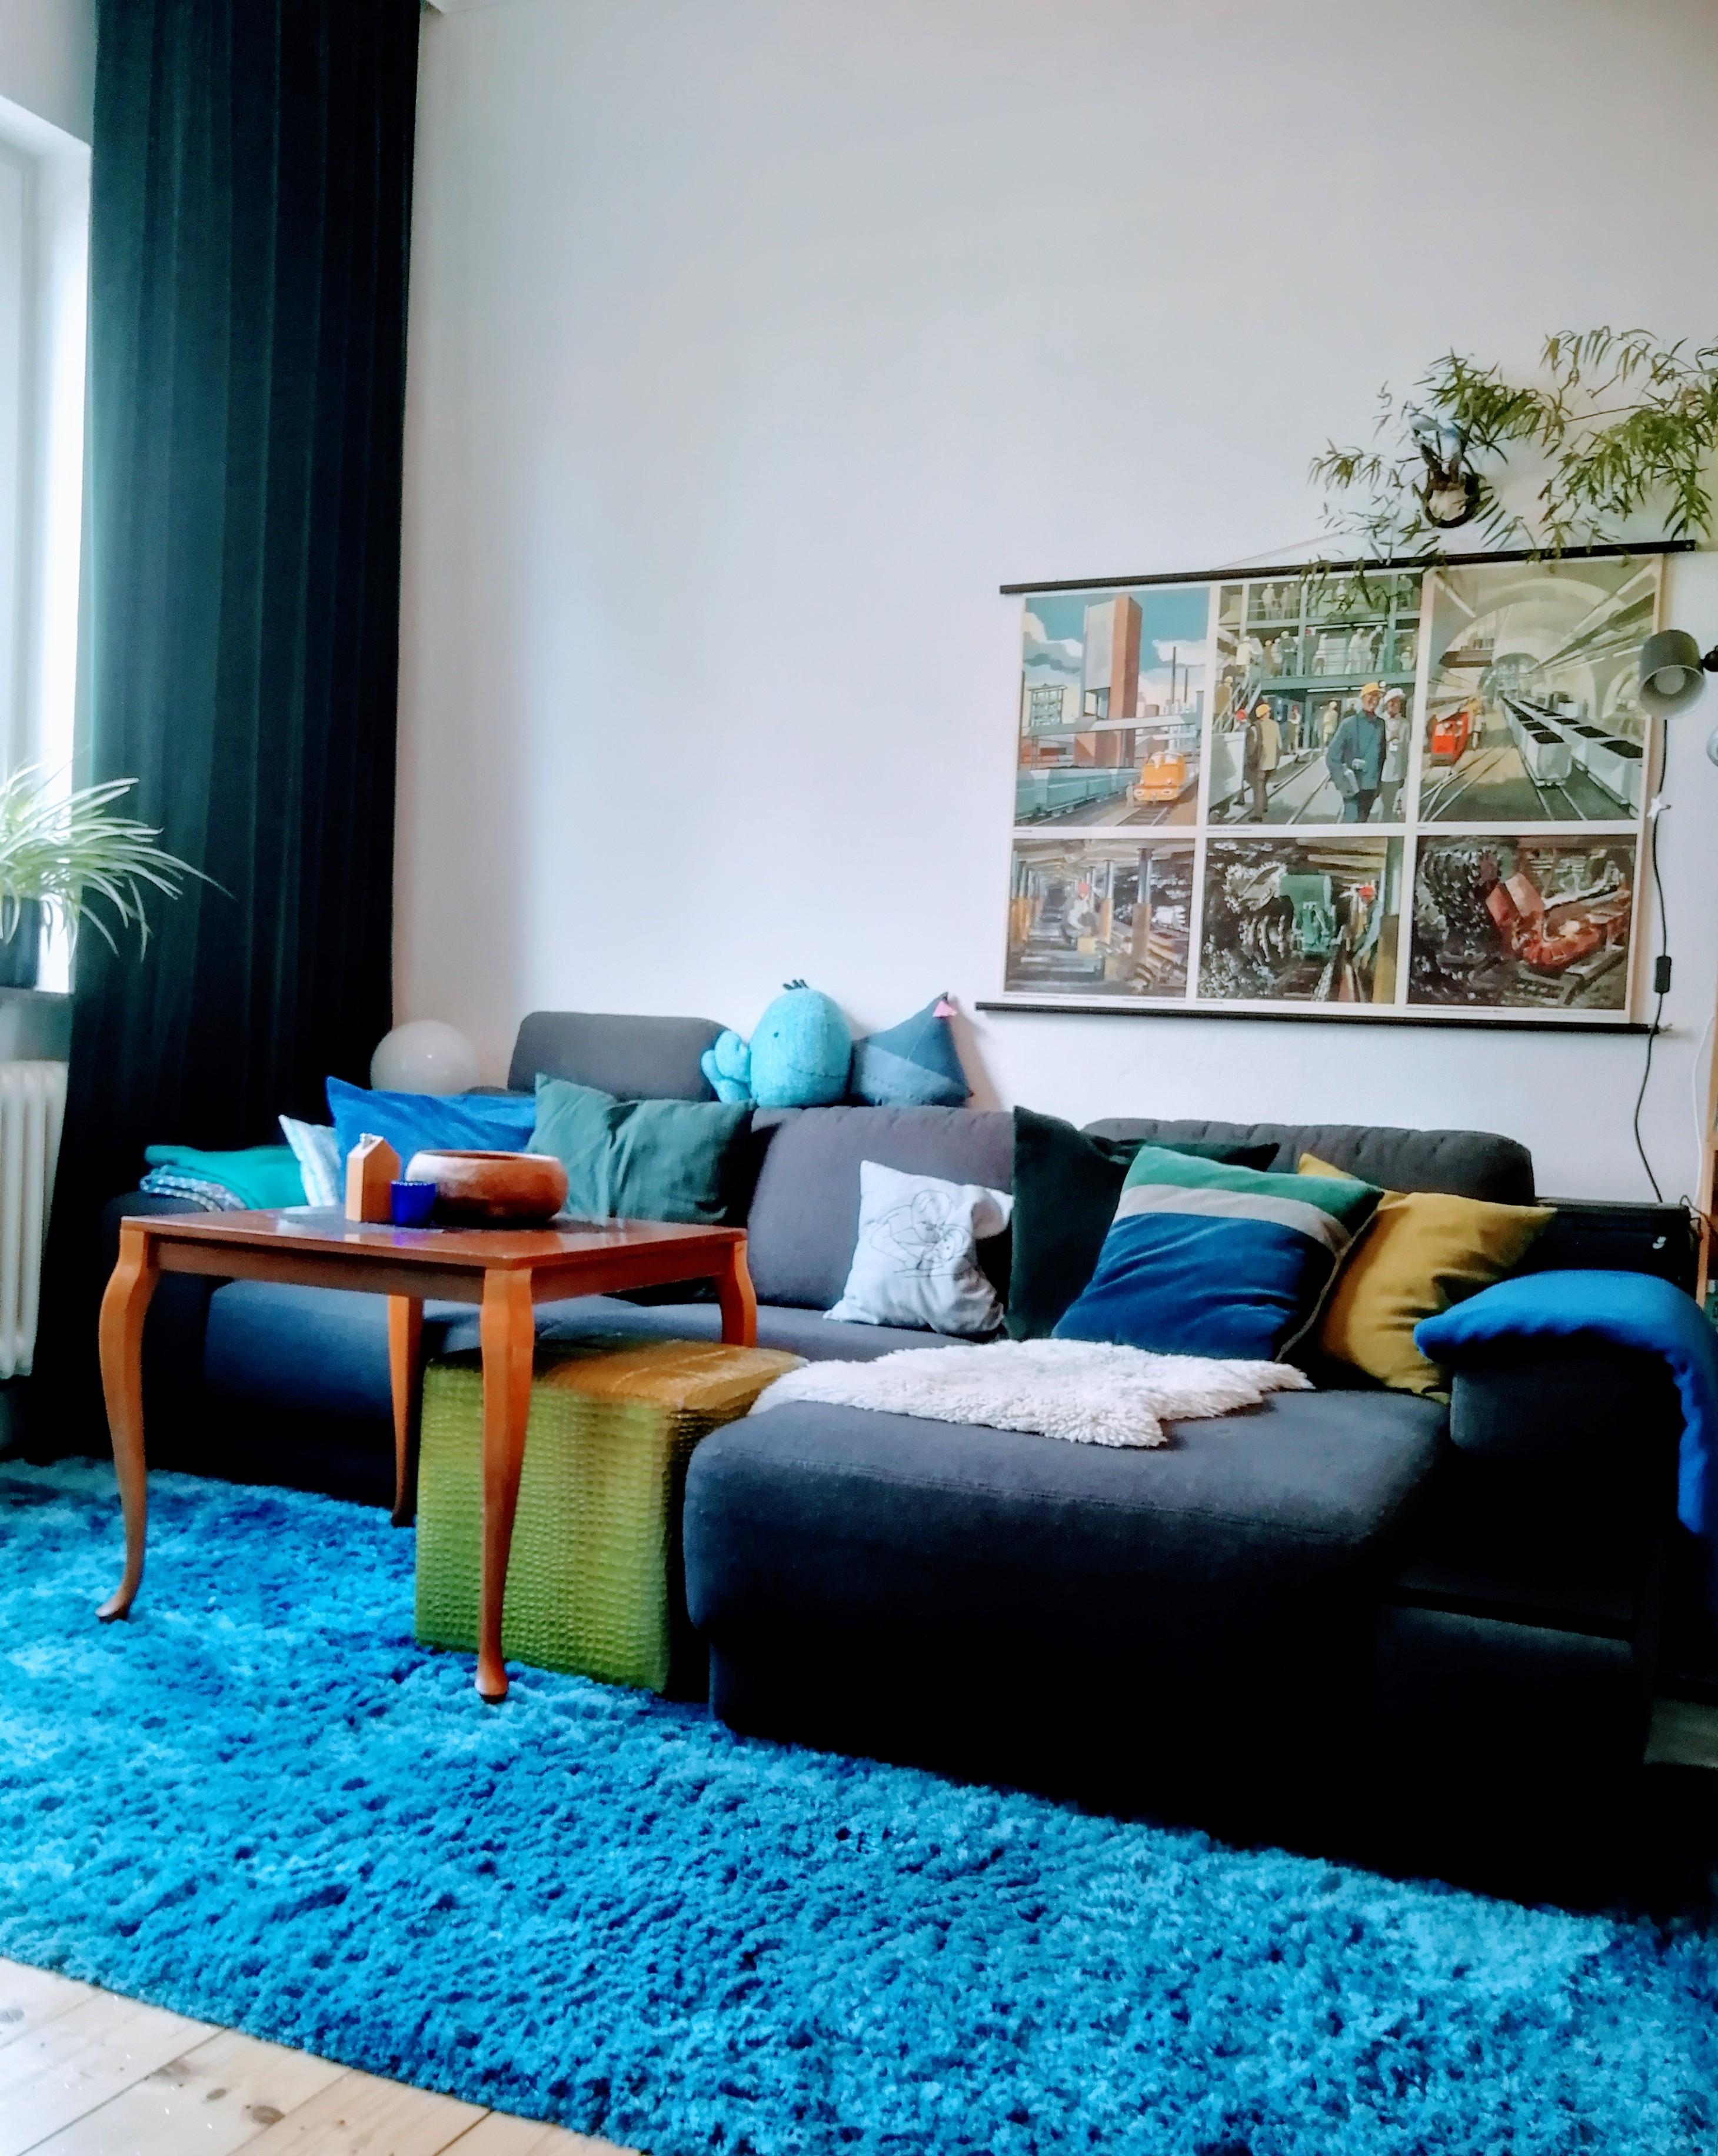 Unser #wohnzimmer mit dem viel behüpften #sofa, dem kuscheligen #teppich & den selbstgenähten #vorhängen aus Samt.